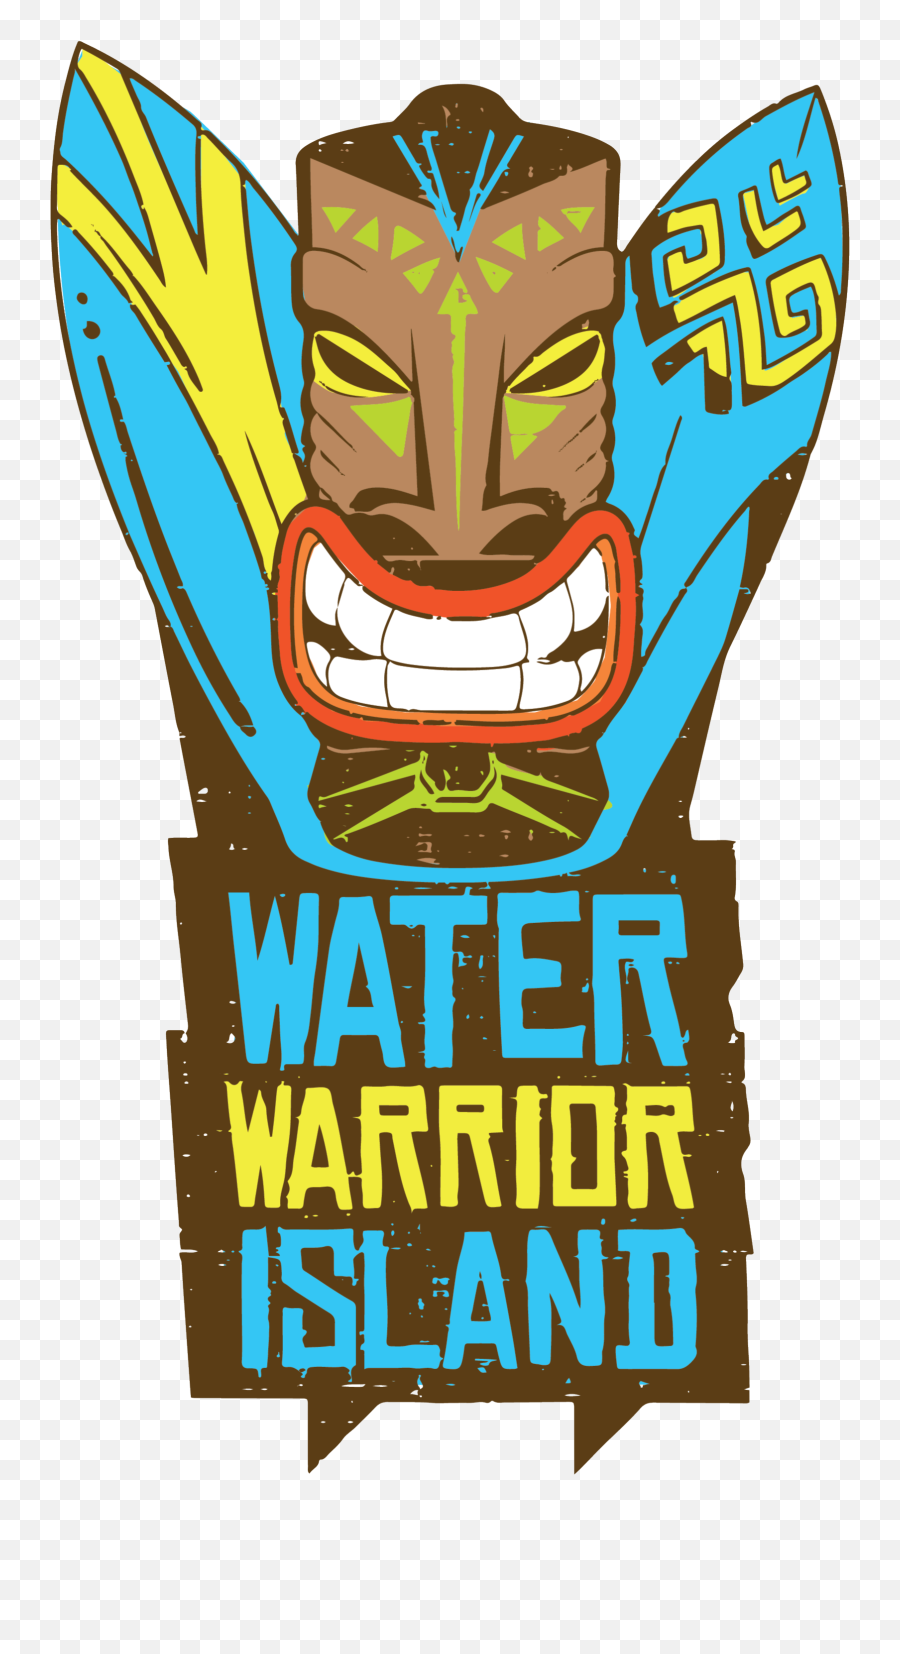 Water Warrior Island U2013 Exhilarating Summer Fun - Water Warrior Island Png,Warrior Logo